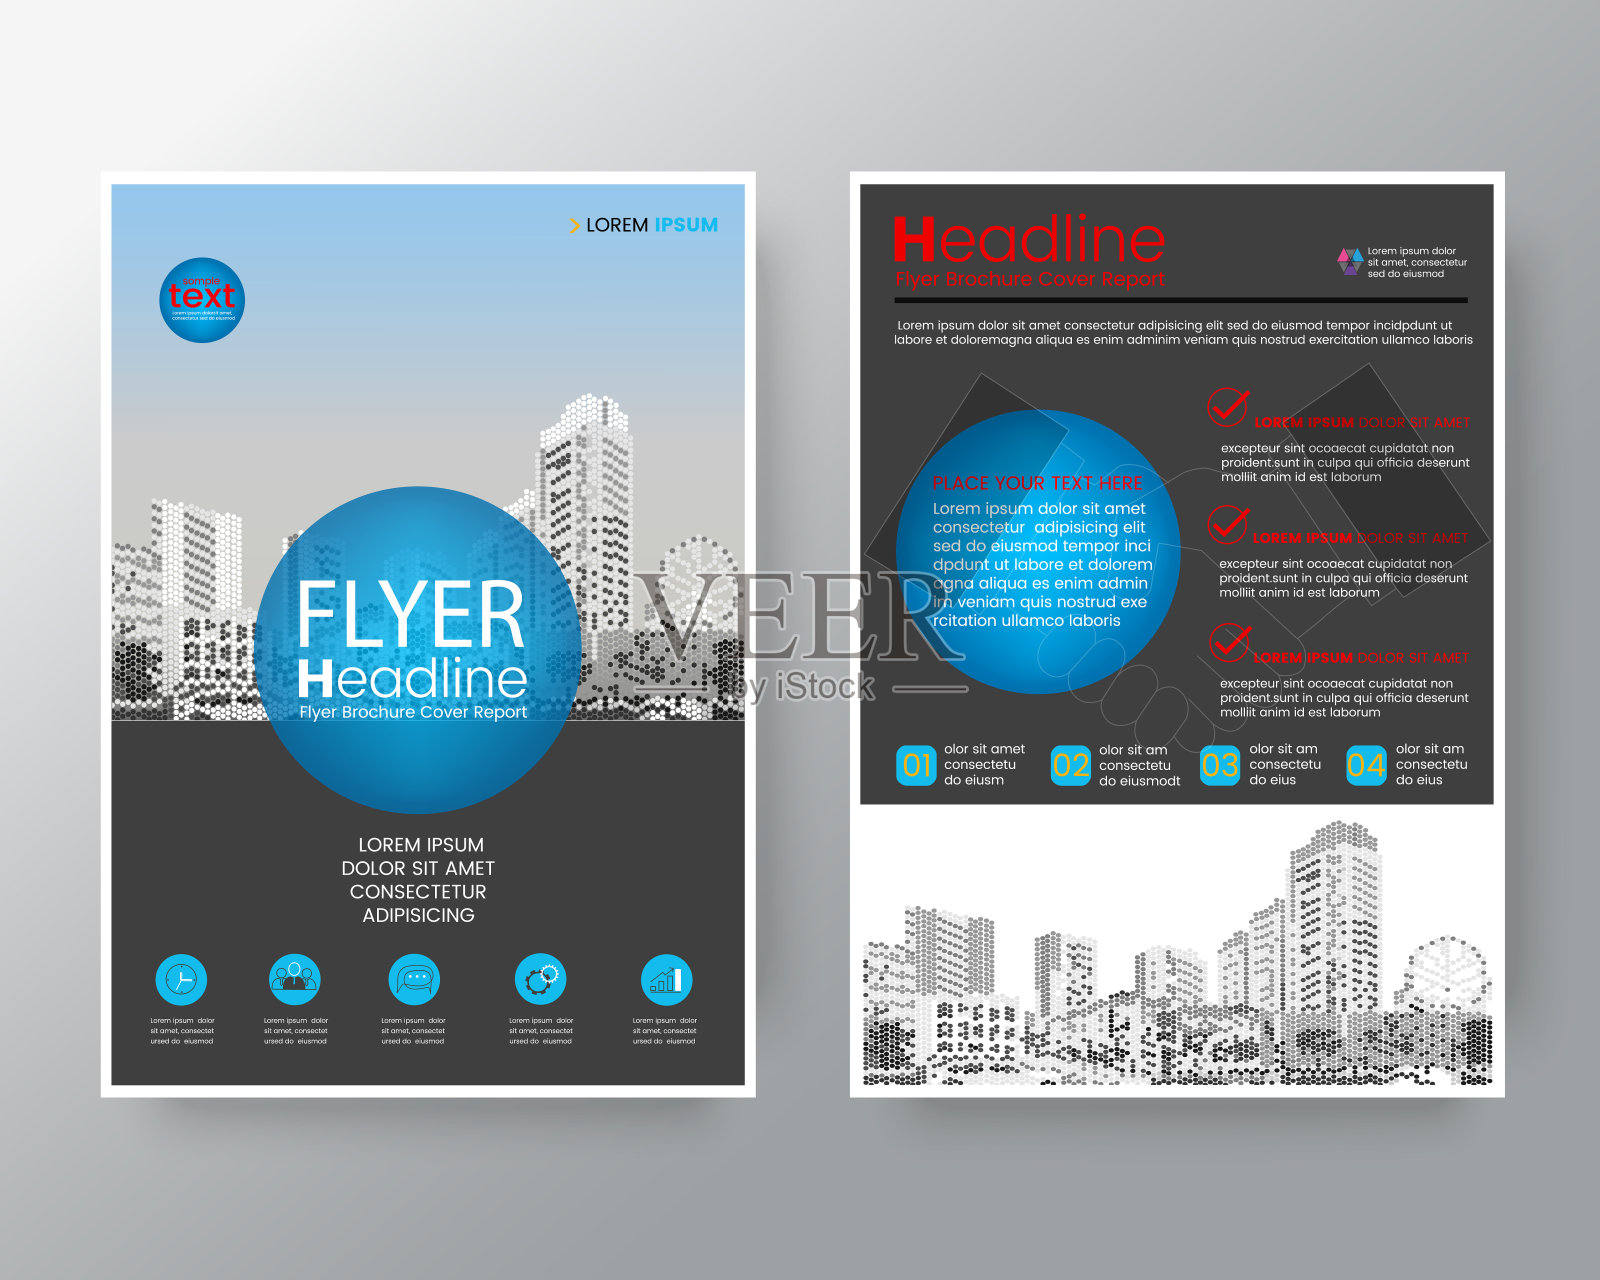 商业模板创意设计:抽象蓝色圆圈宣传册，年度报告封面传单海报设计布局矢量模板A4大小设计模板素材